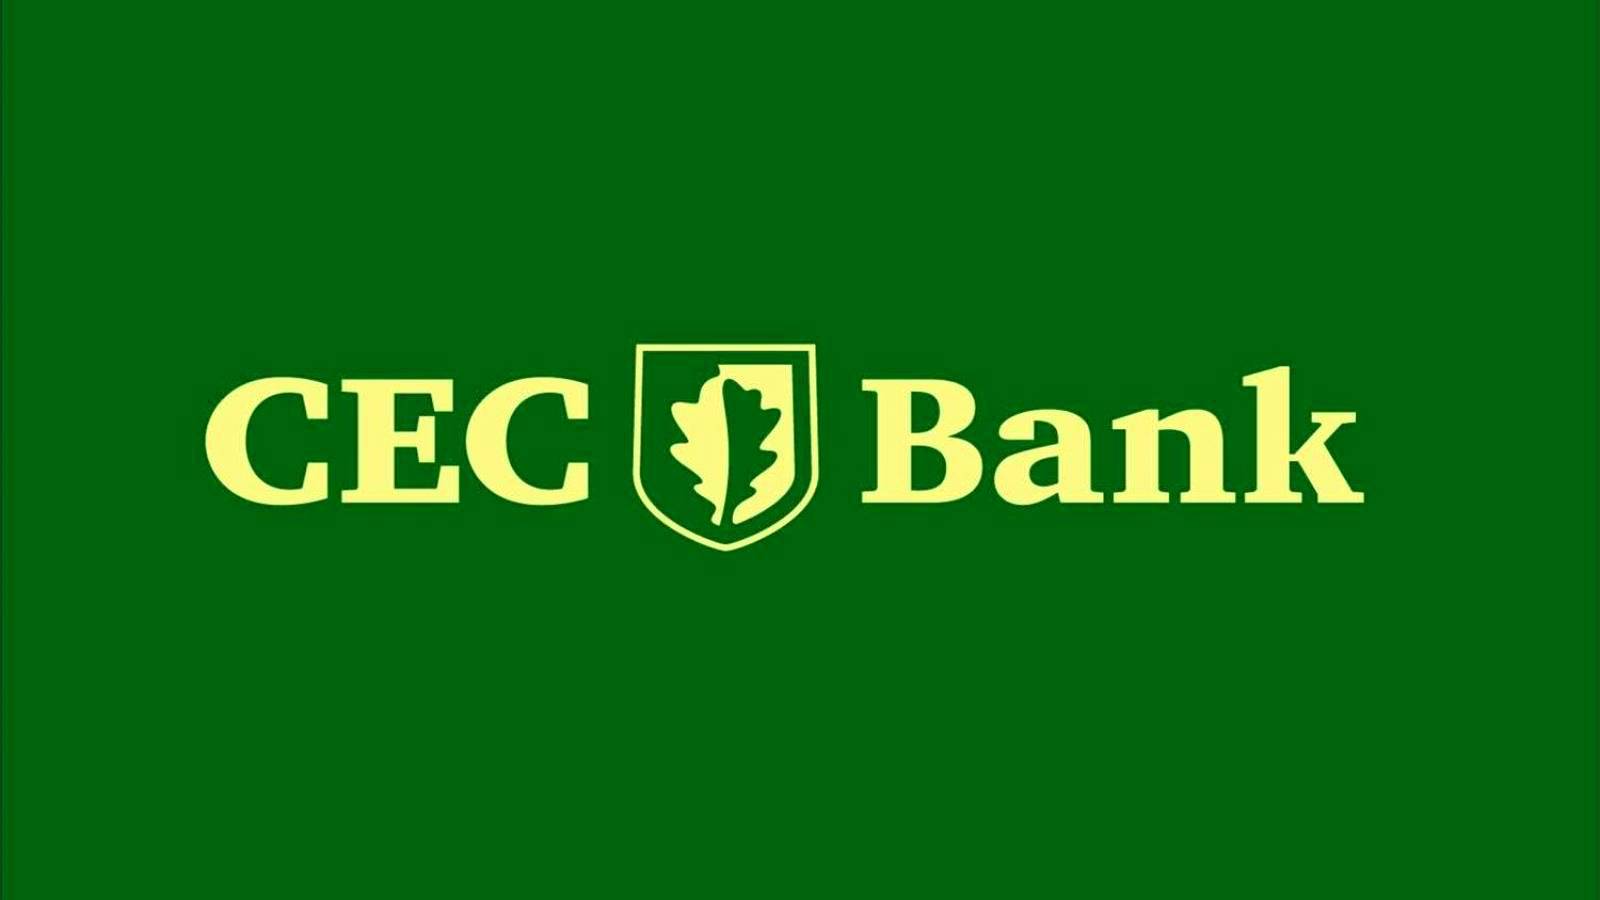 CEC Banks officielle meddelelse om den VIGTIGE beslutning, der er truffet ALLE kunder